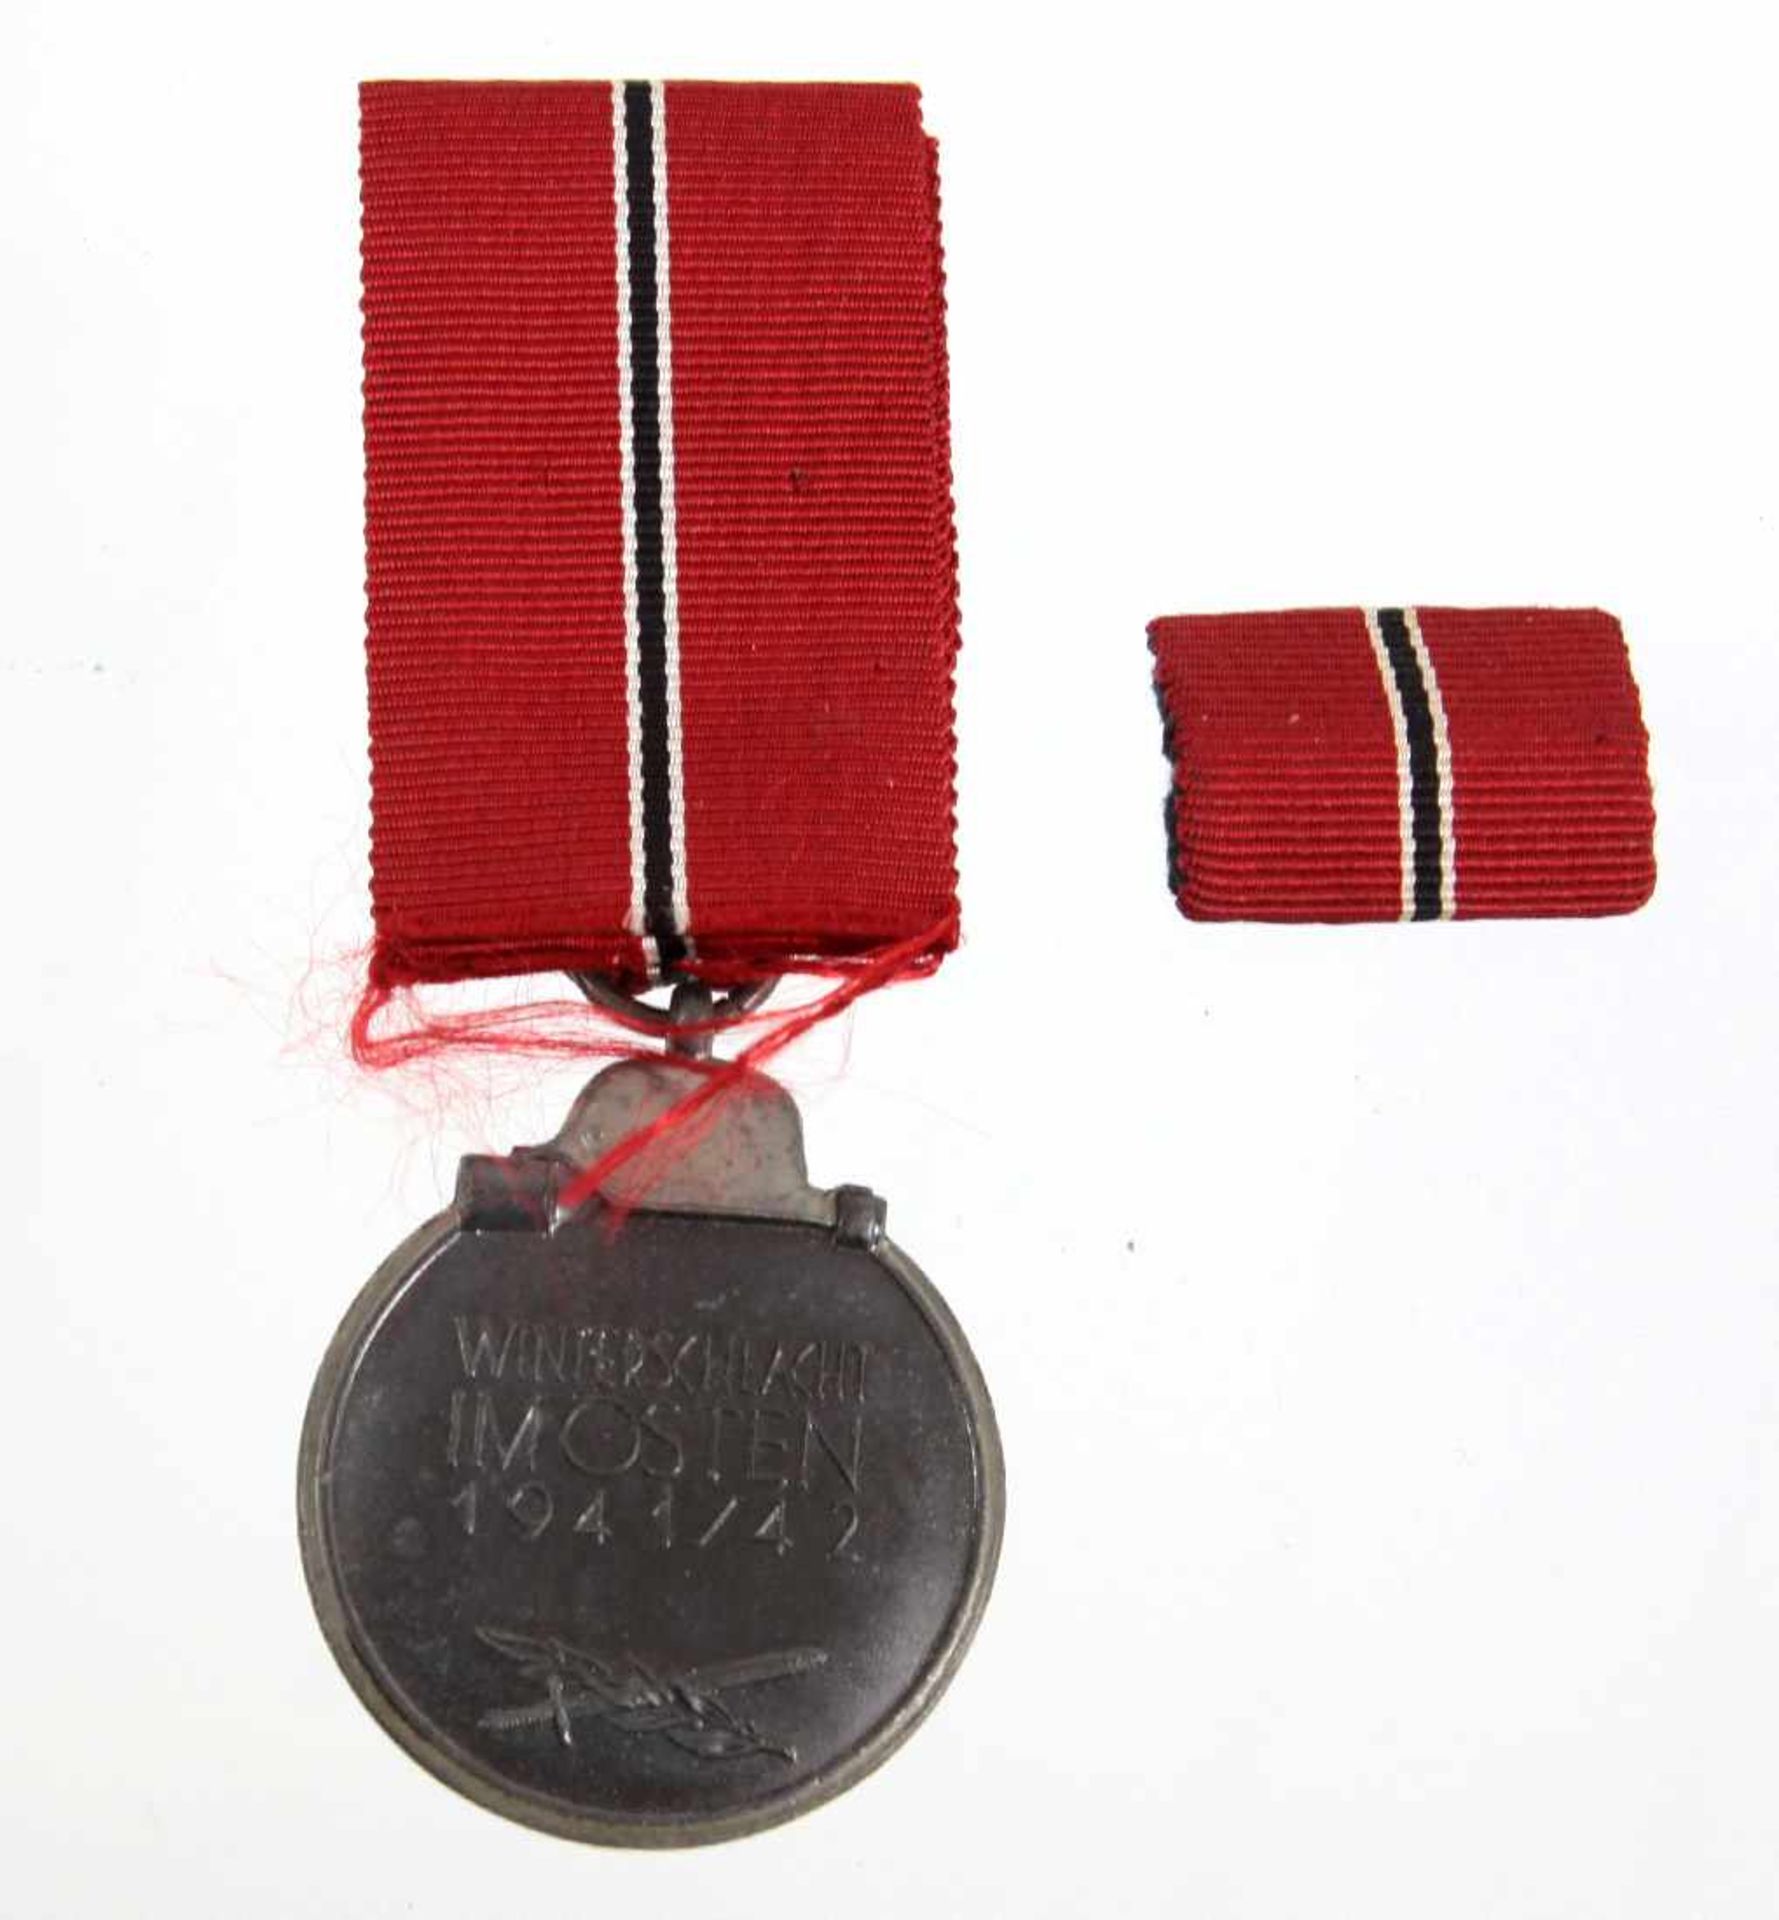 Medaille Winterschlacht im Osten 1941/42 sogn. *Ostmedaille* in dunkel brünnierter Ausführung mit